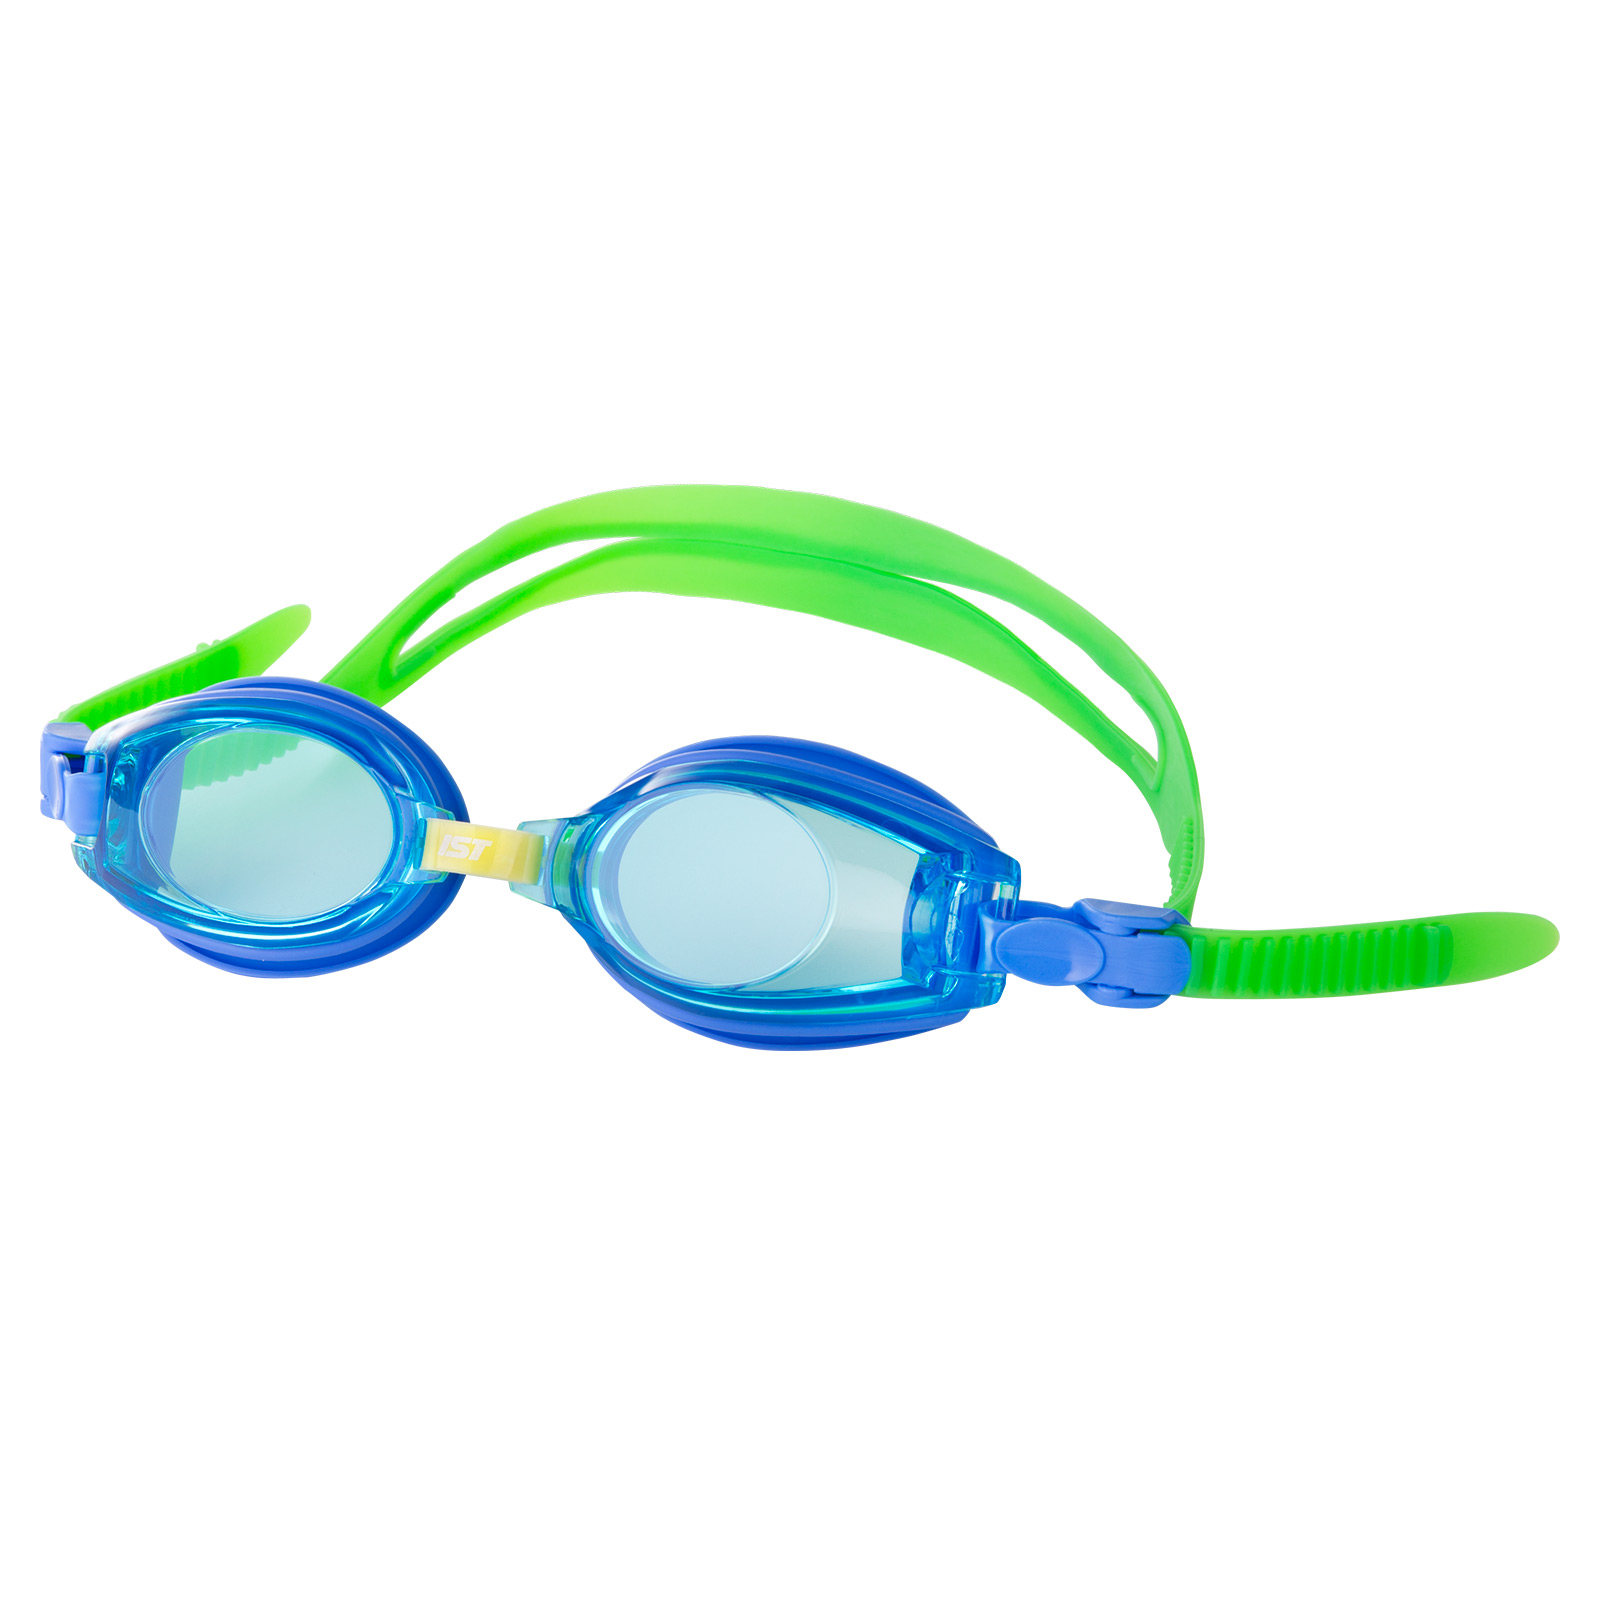 Silicone Jr. Swimming Goggle